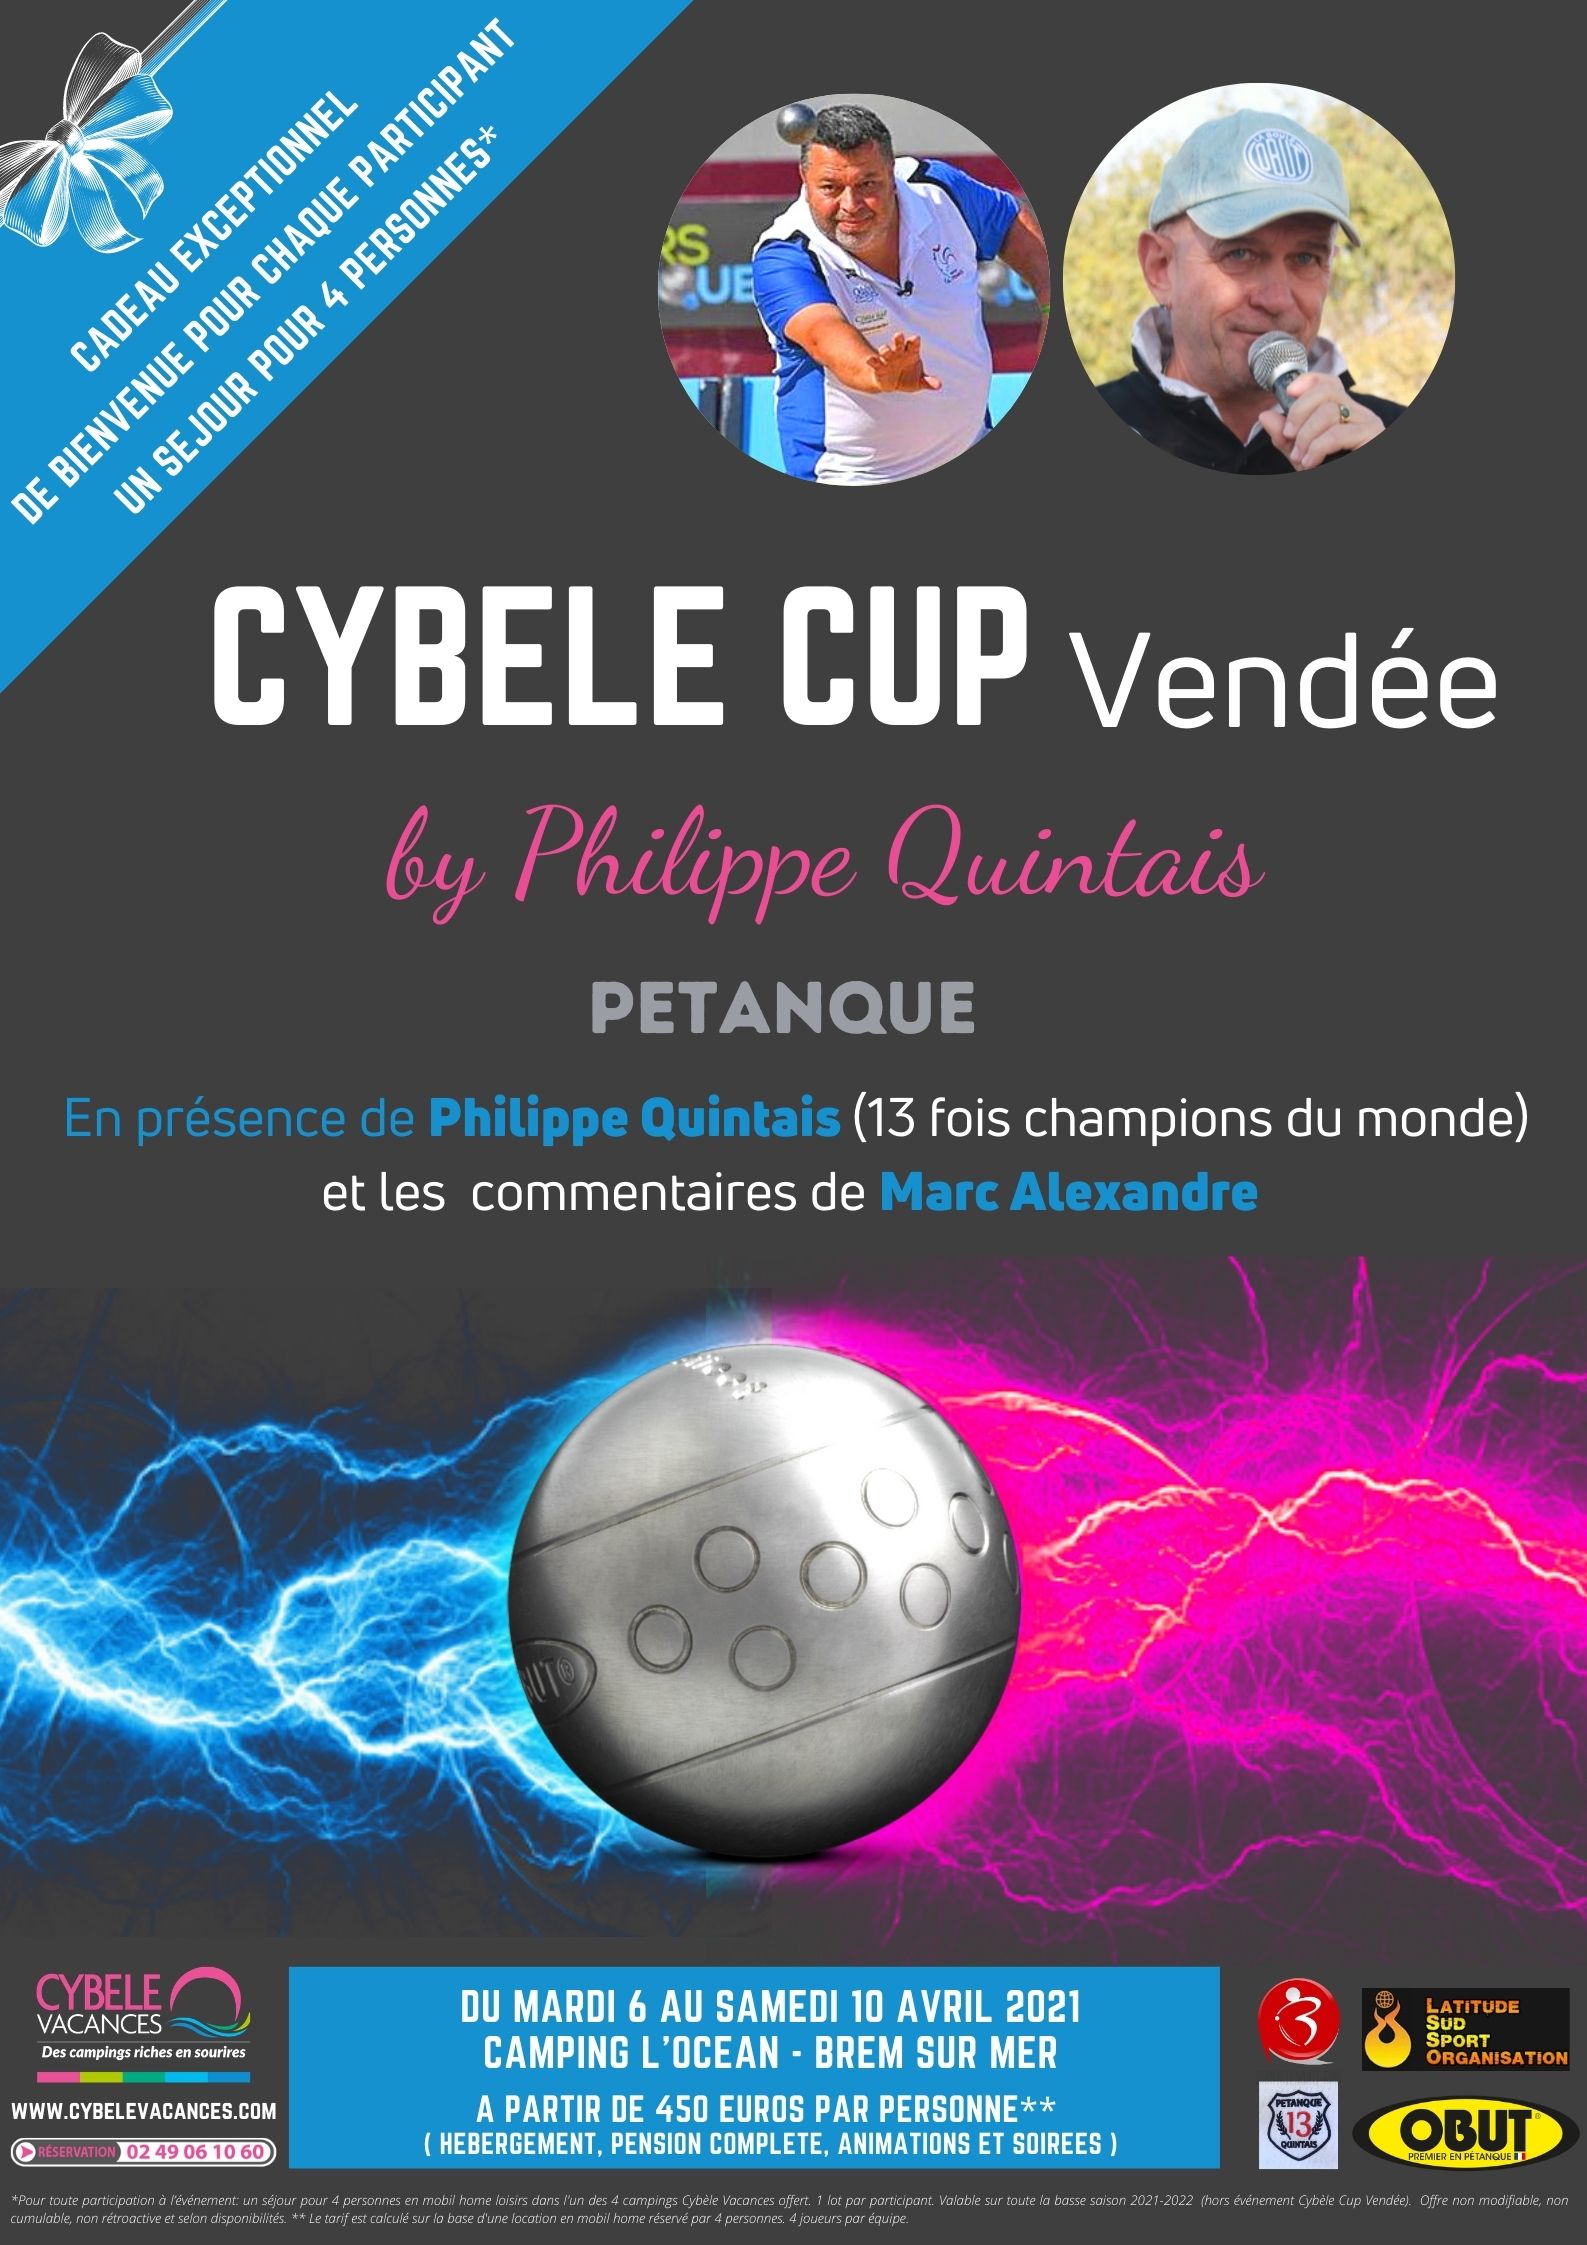 CYBELE CUP Vendée 2021 - Philippe QUINTAIS